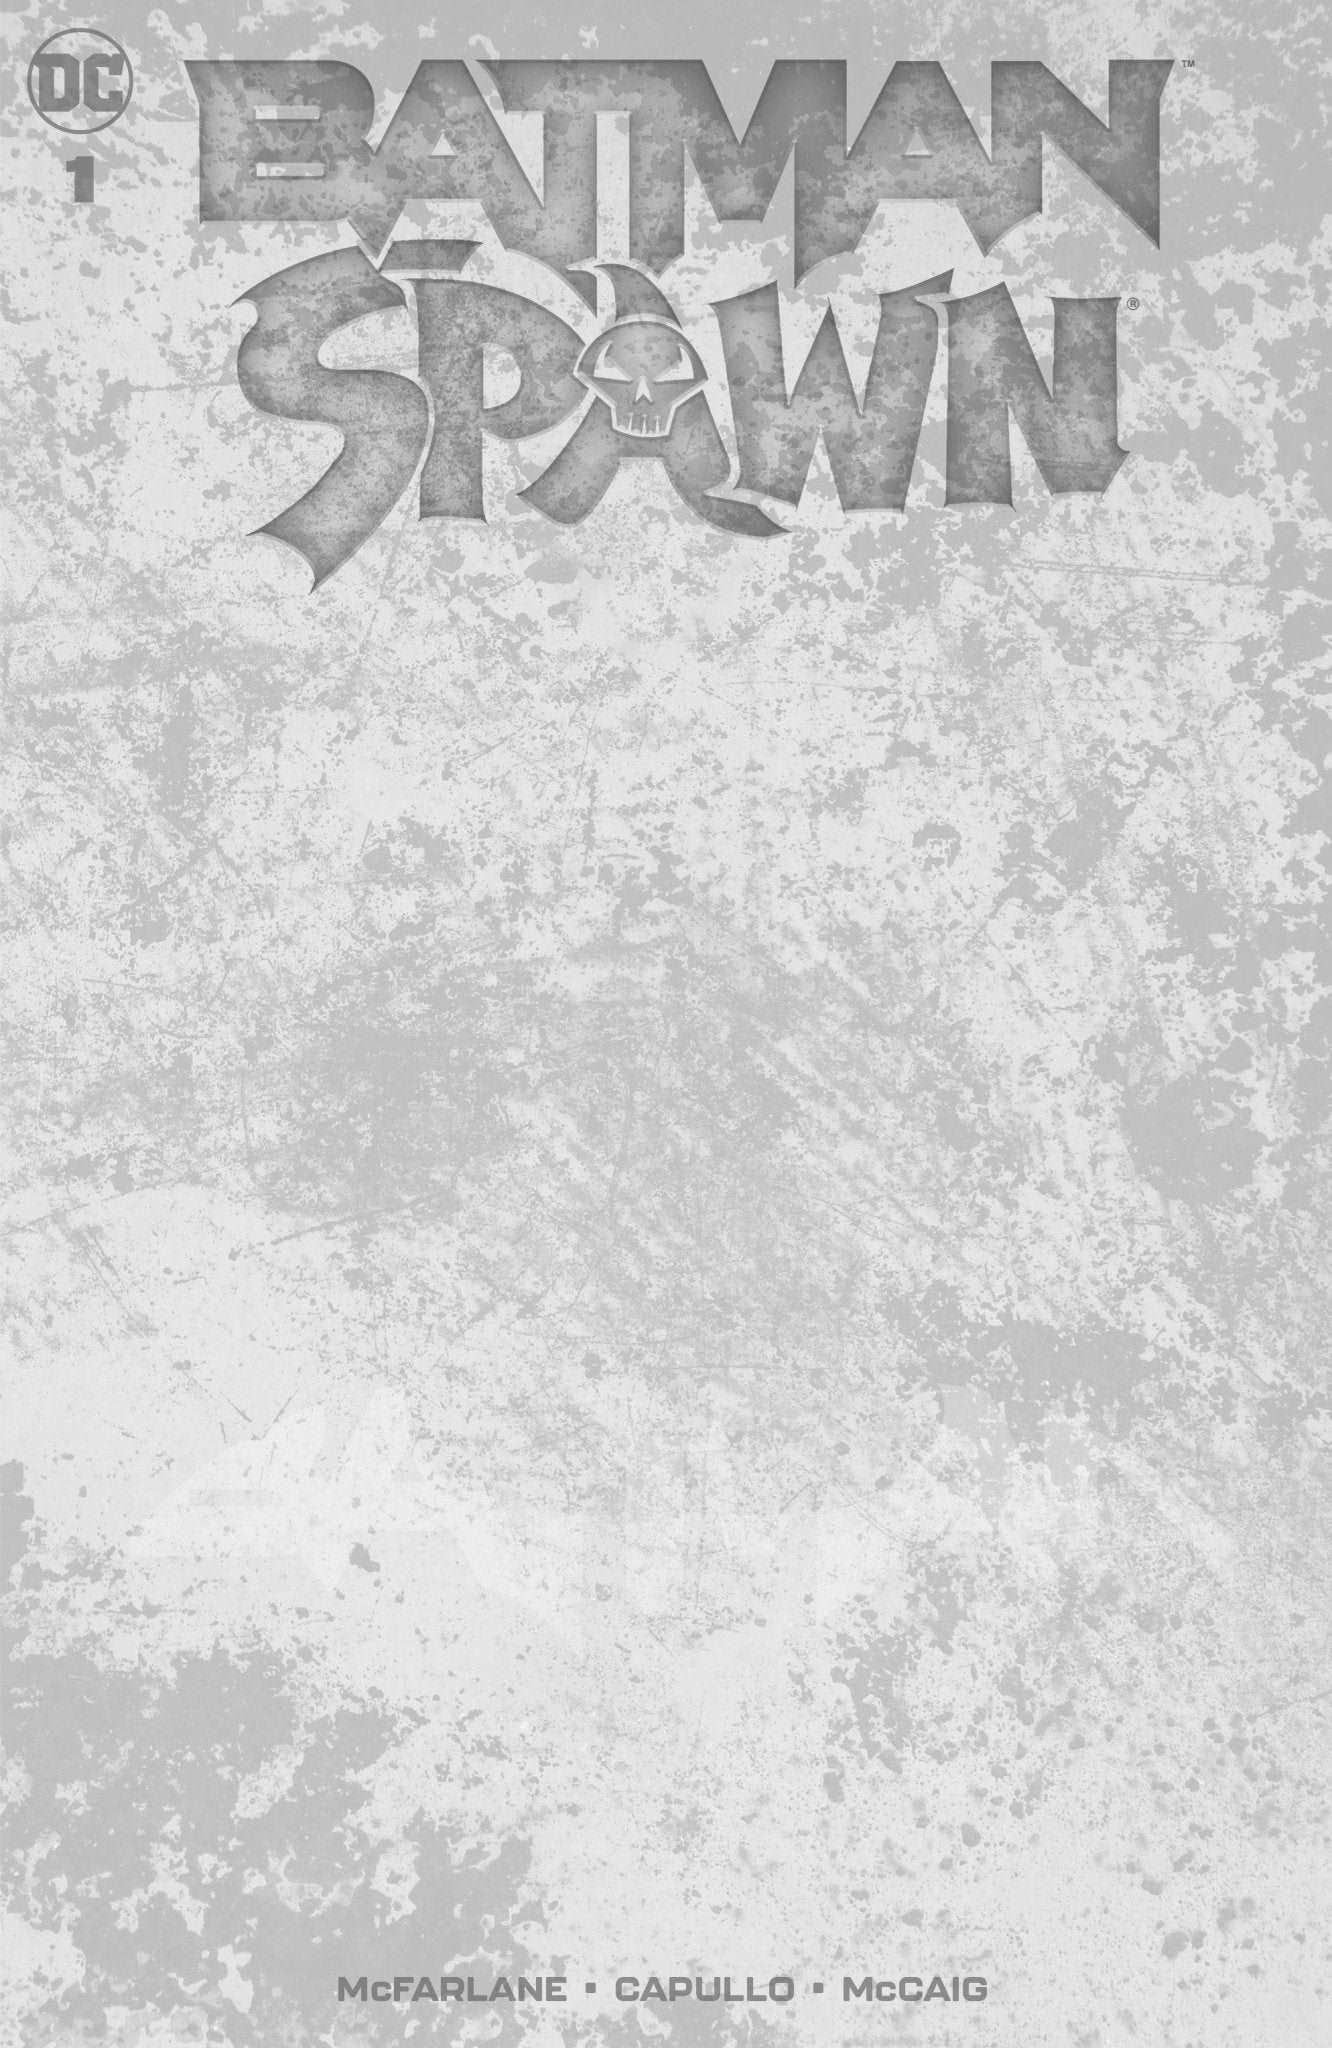 BATMAN SPAWN #1 (ONE SHOT) CVR I BLANK VAR DC